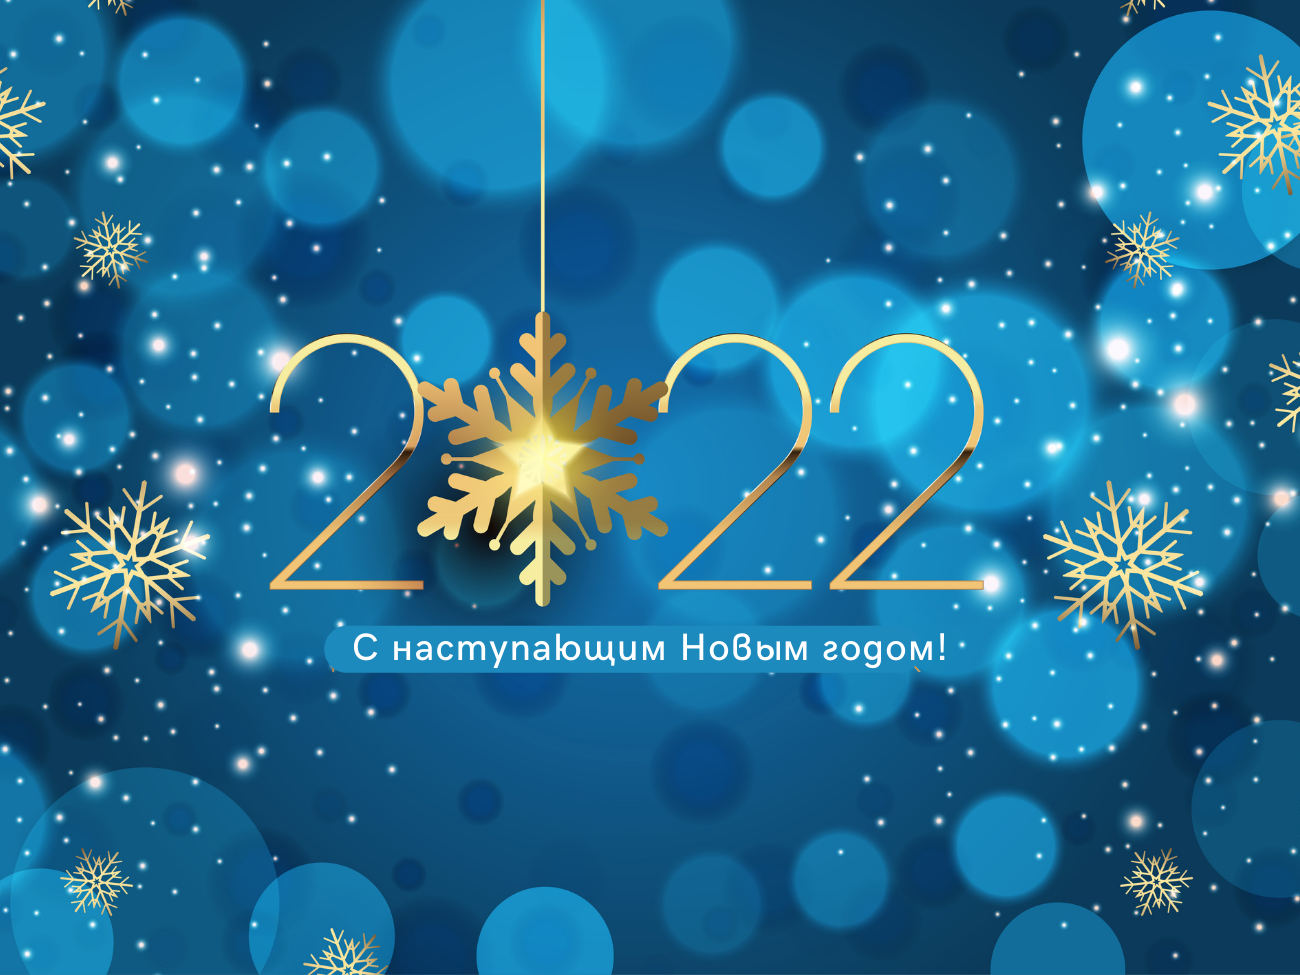 С наступающим Новым 2022 годом - ивент-агентство «SYRUP»